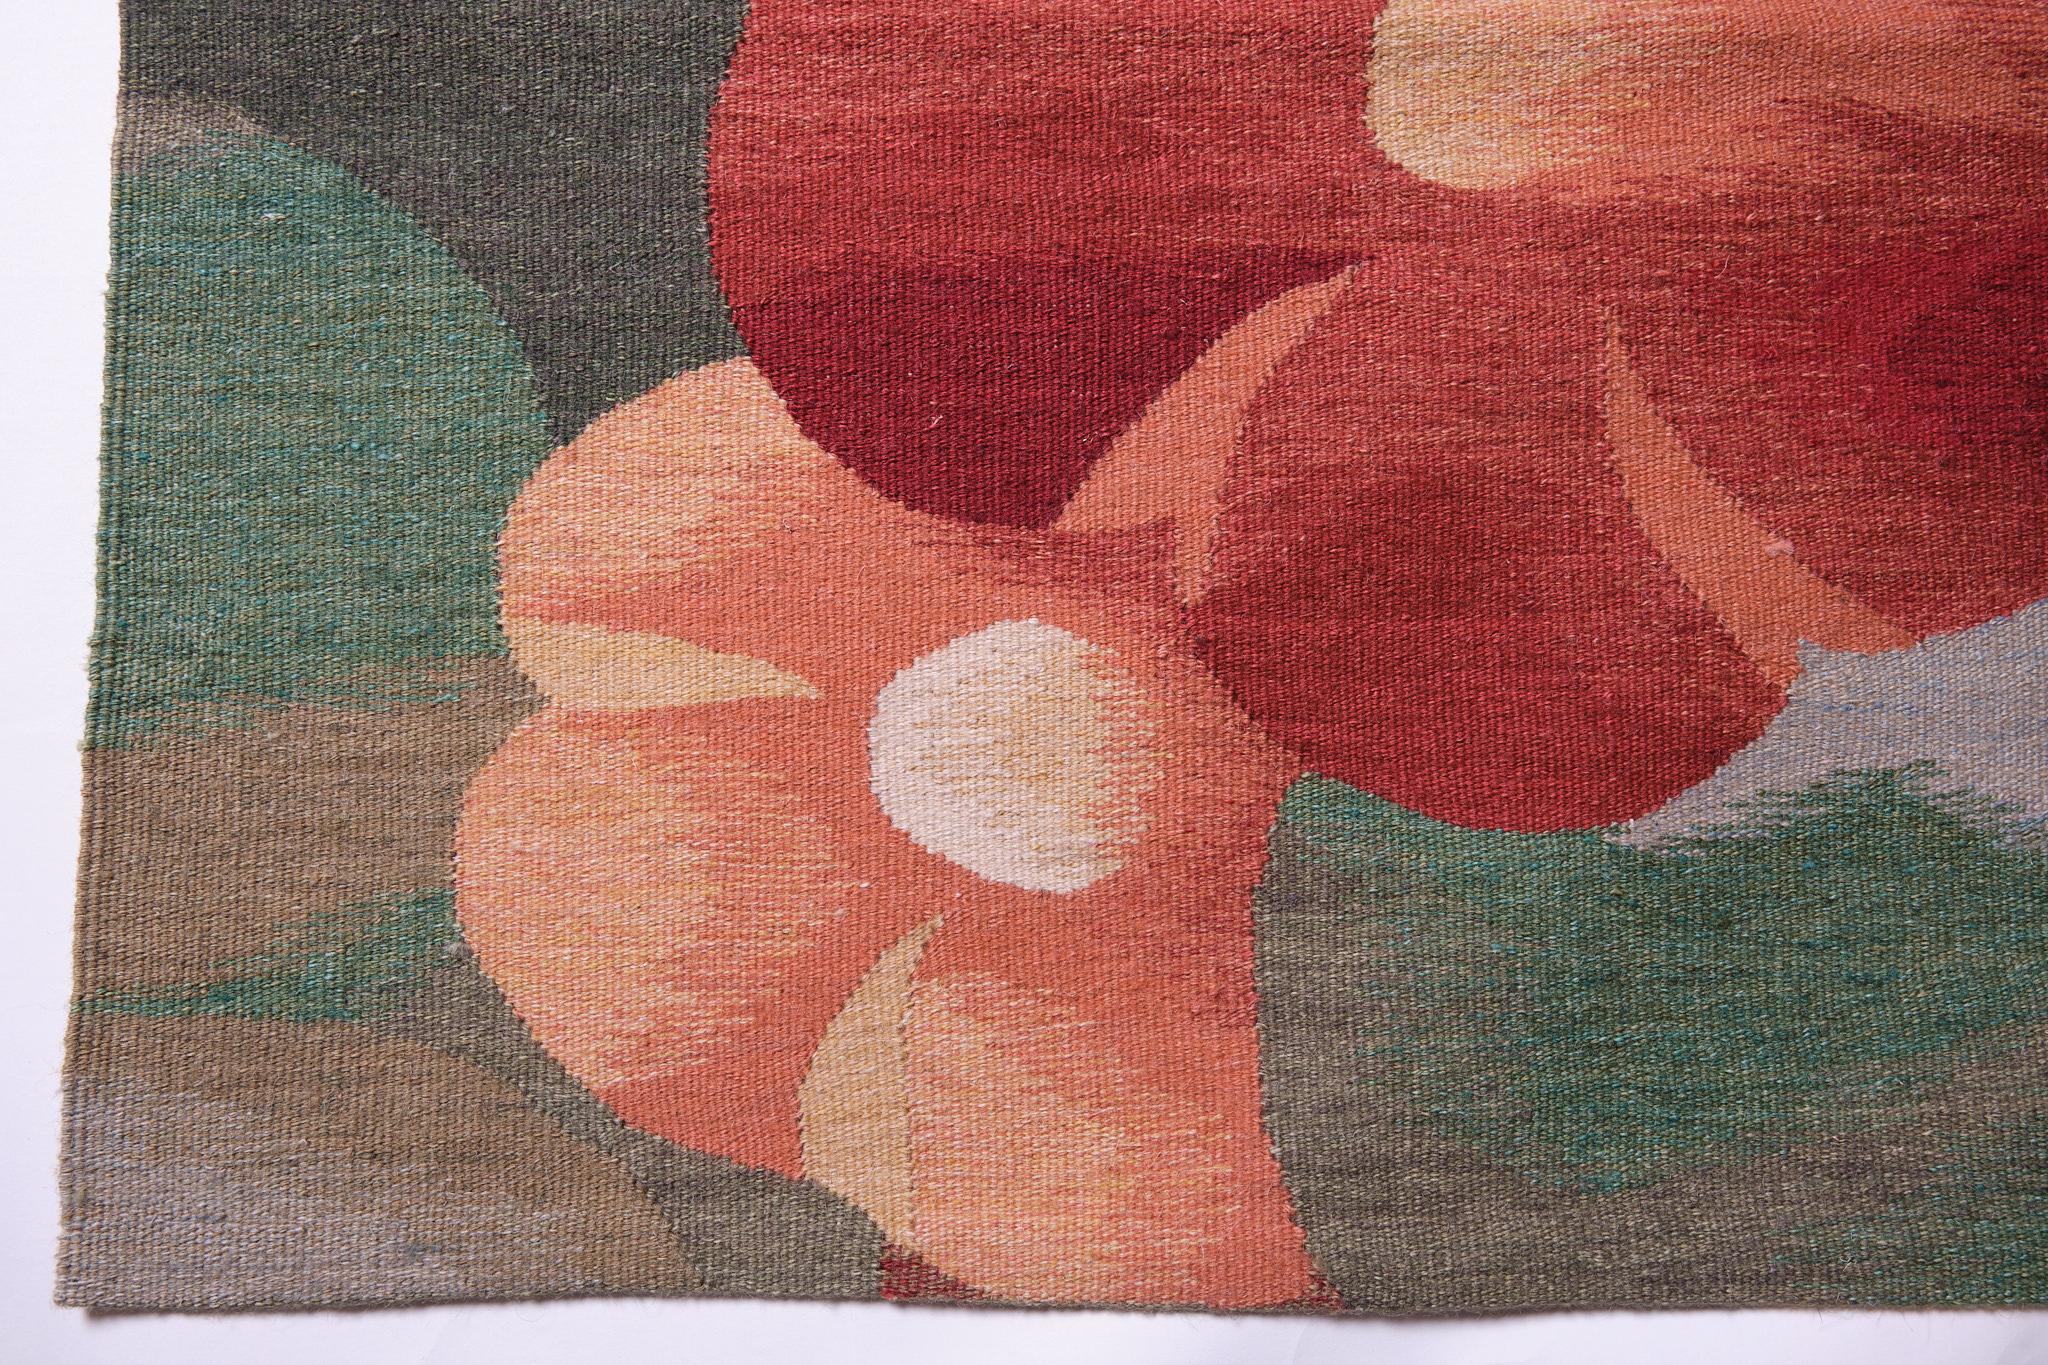 Dies ist ein moderner flachgewebter Kilim-Teppich aus der Türkei mit einer seltenen und schönen Farbkomposition.

Es handelt sich um einen modernen neuen Kelim, der modernes Design mit traditionellen Kelimherstellungsmethoden wie Wollqualität,